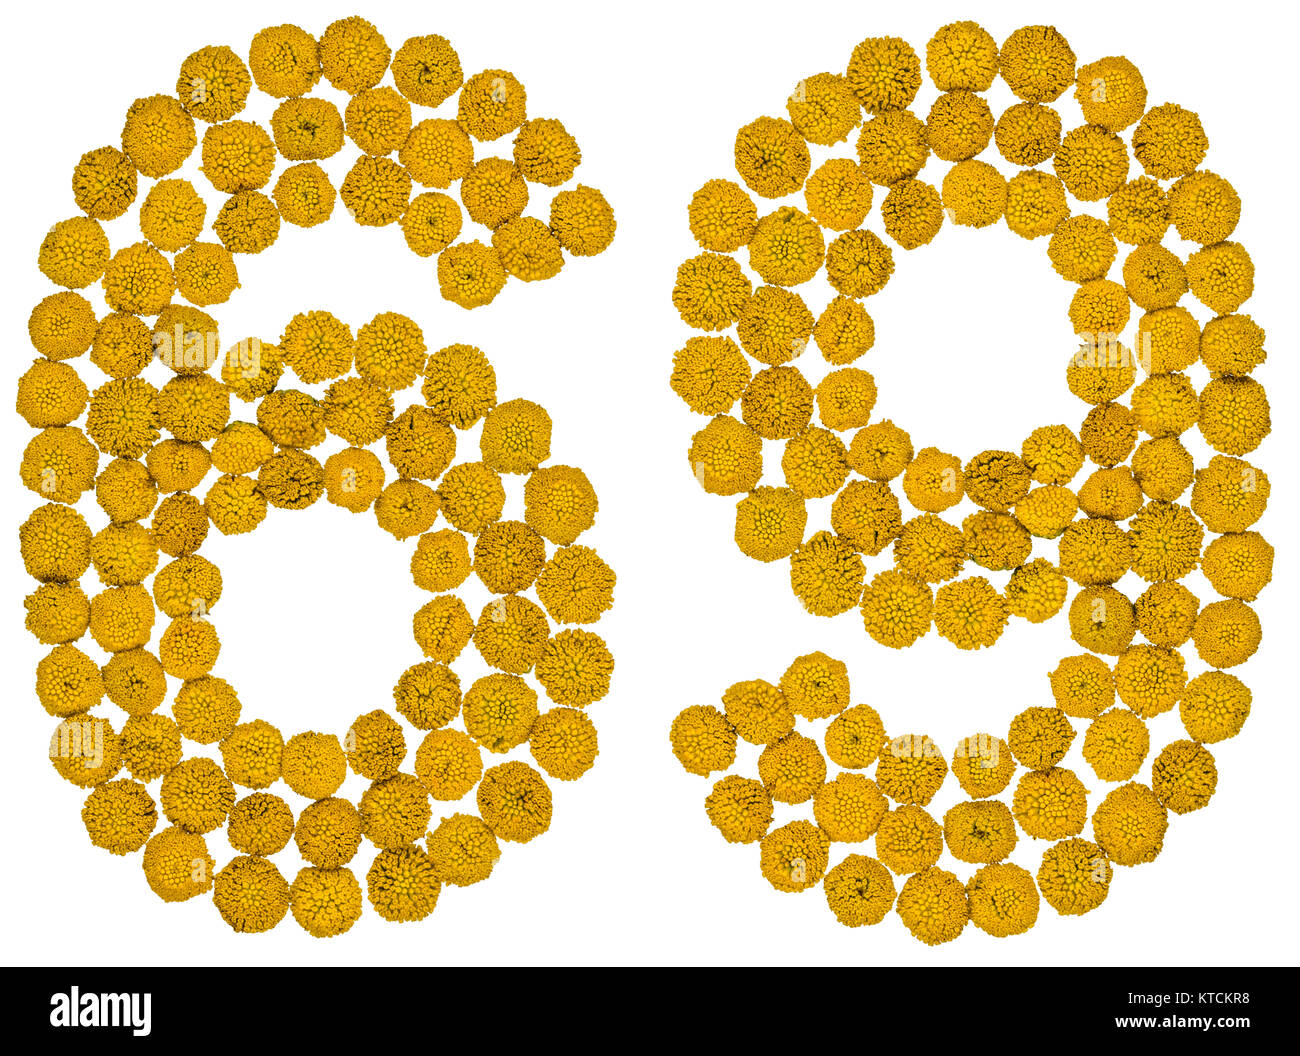 Numero arabo 69, sessanta nove, dal giallo dei fiori di tansy, isolato su sfondo bianco Il tansy - una pianta della famiglia a margherita con giallo a sommità piatta Foto Stock